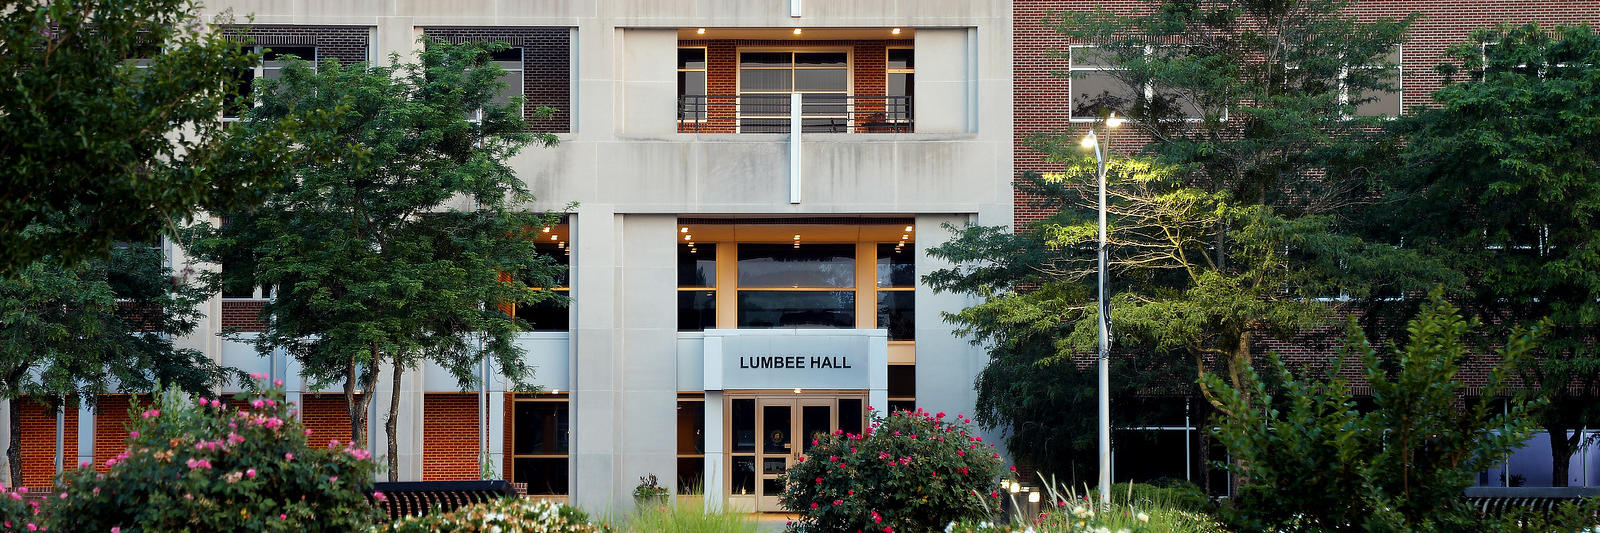 Lumbee Hall